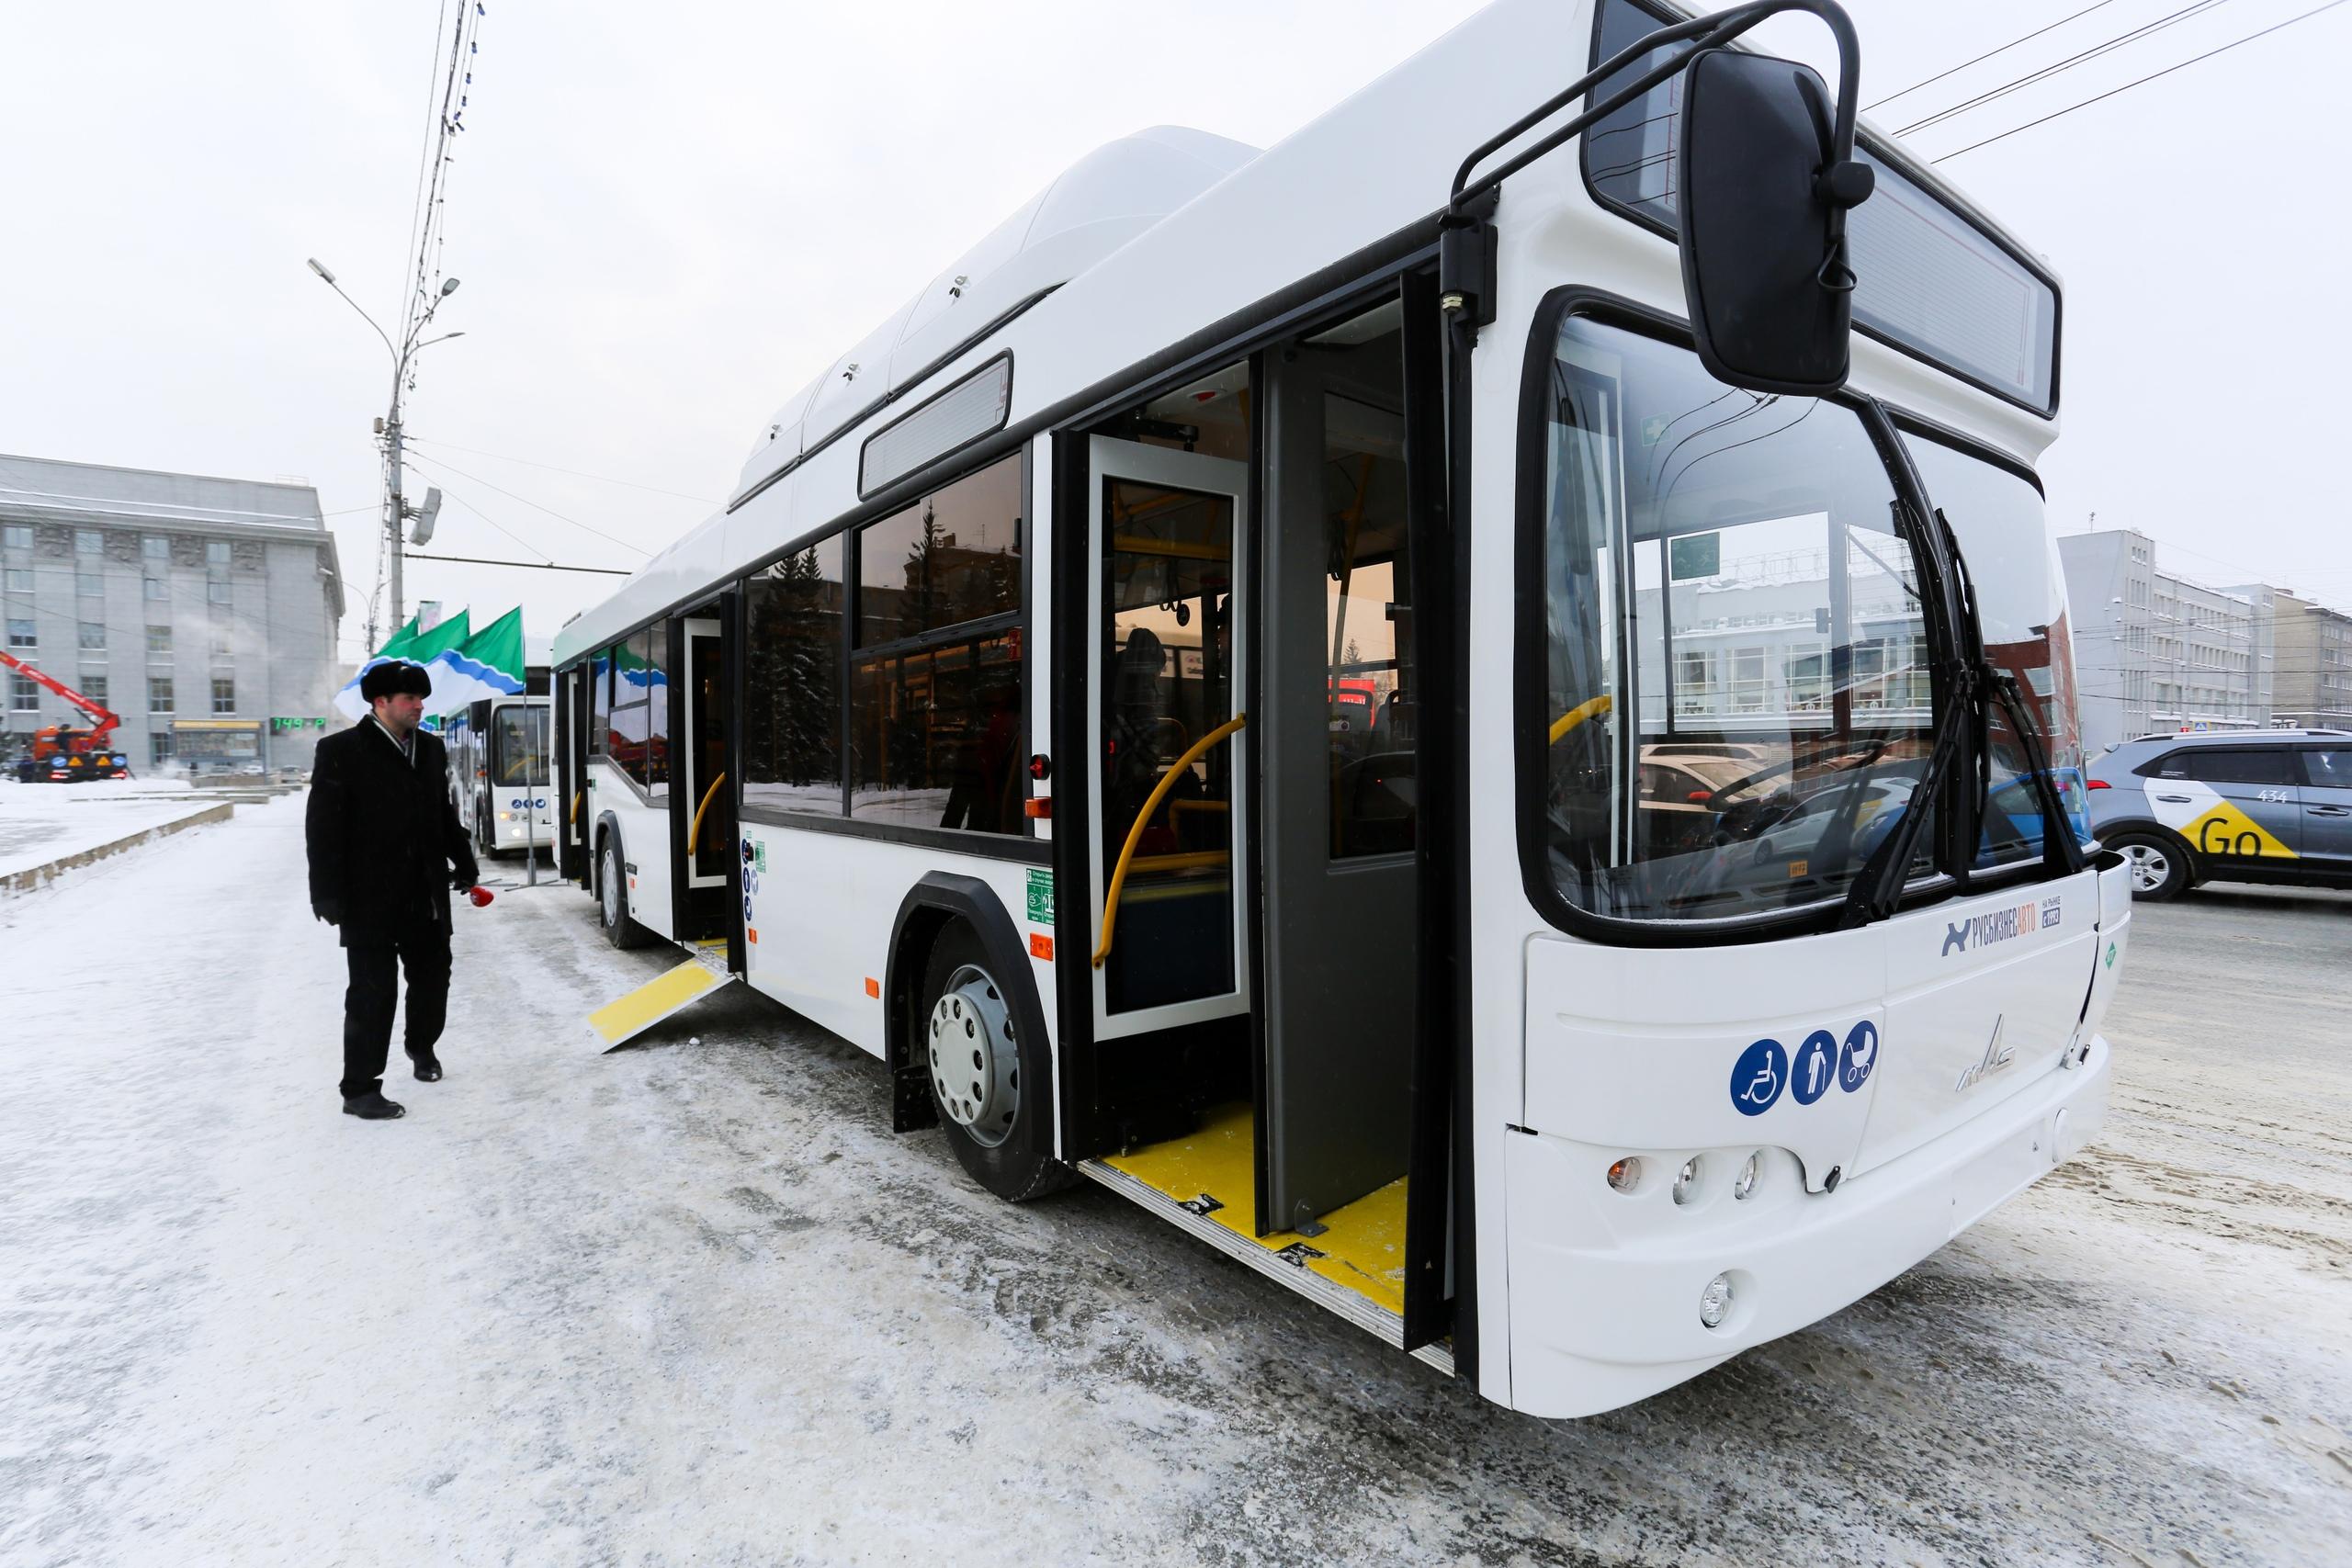 Транспорт новосибирск автобус